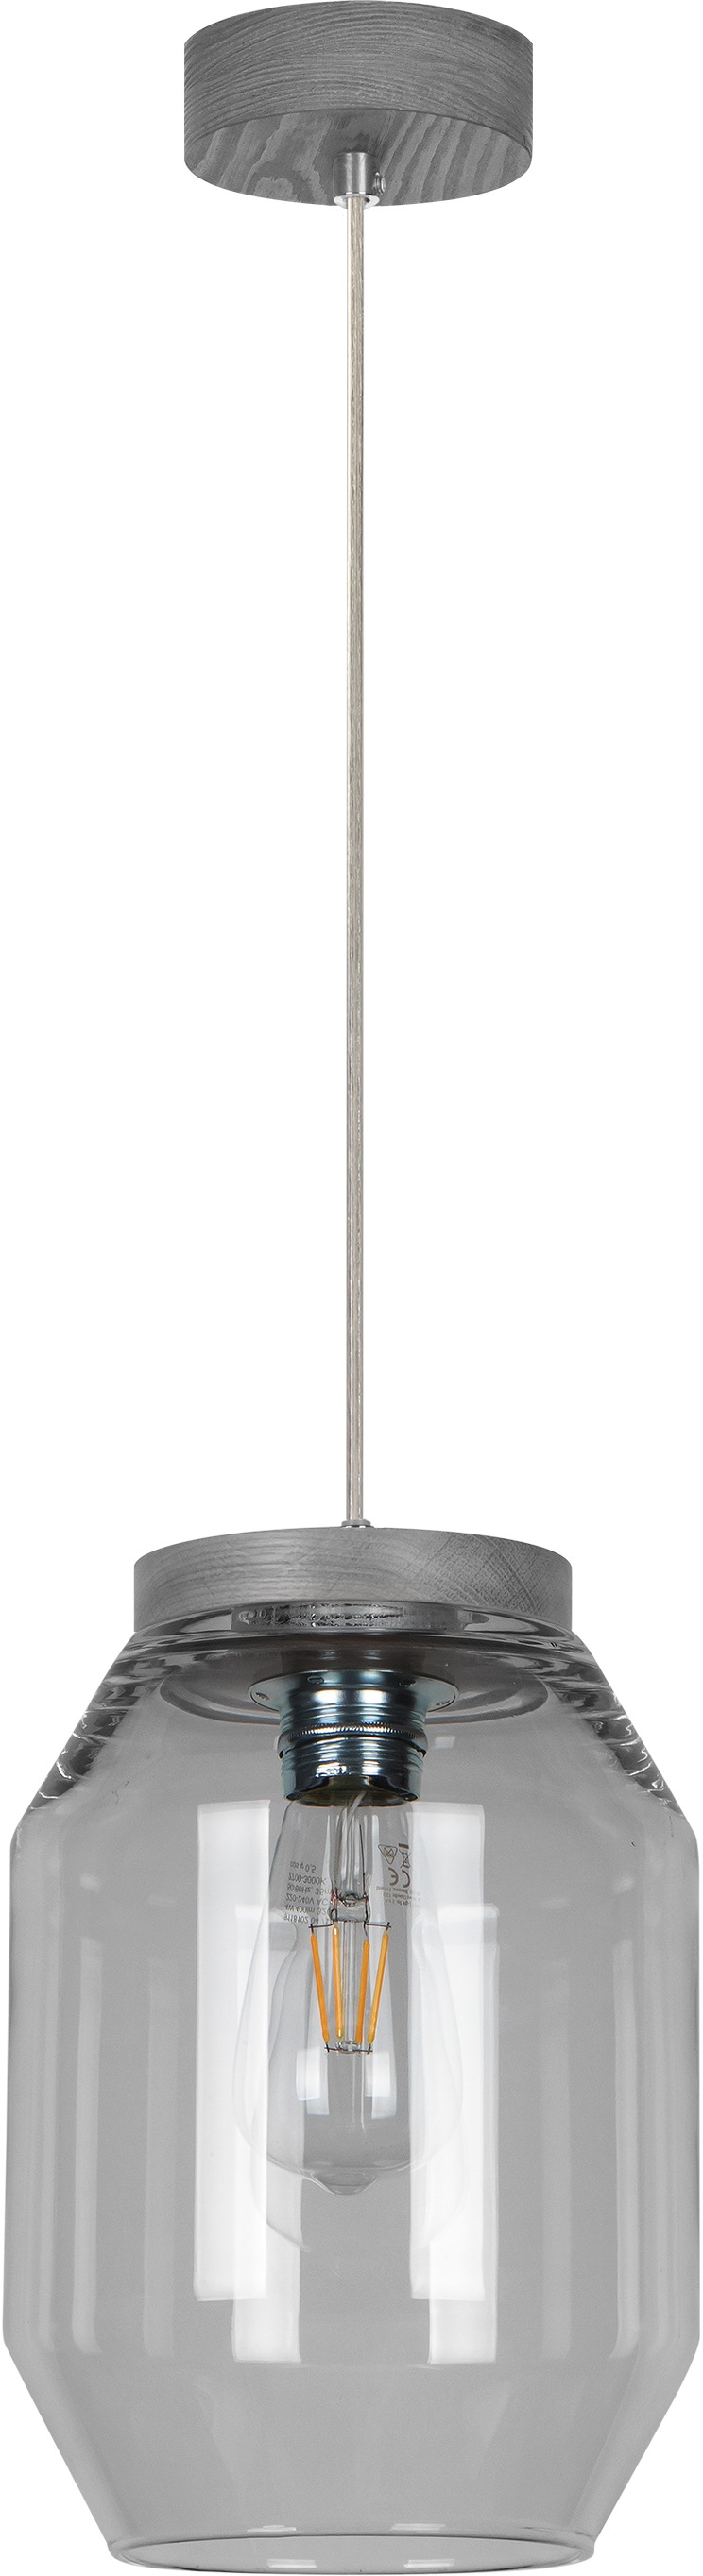 BRITOP LIGHTING Pendelleuchte Vaso, E27, Naturprodukt aus Kiefernholz, Nachhaltig mit FSC-Zertifikat, Hochwertige Glasschirme